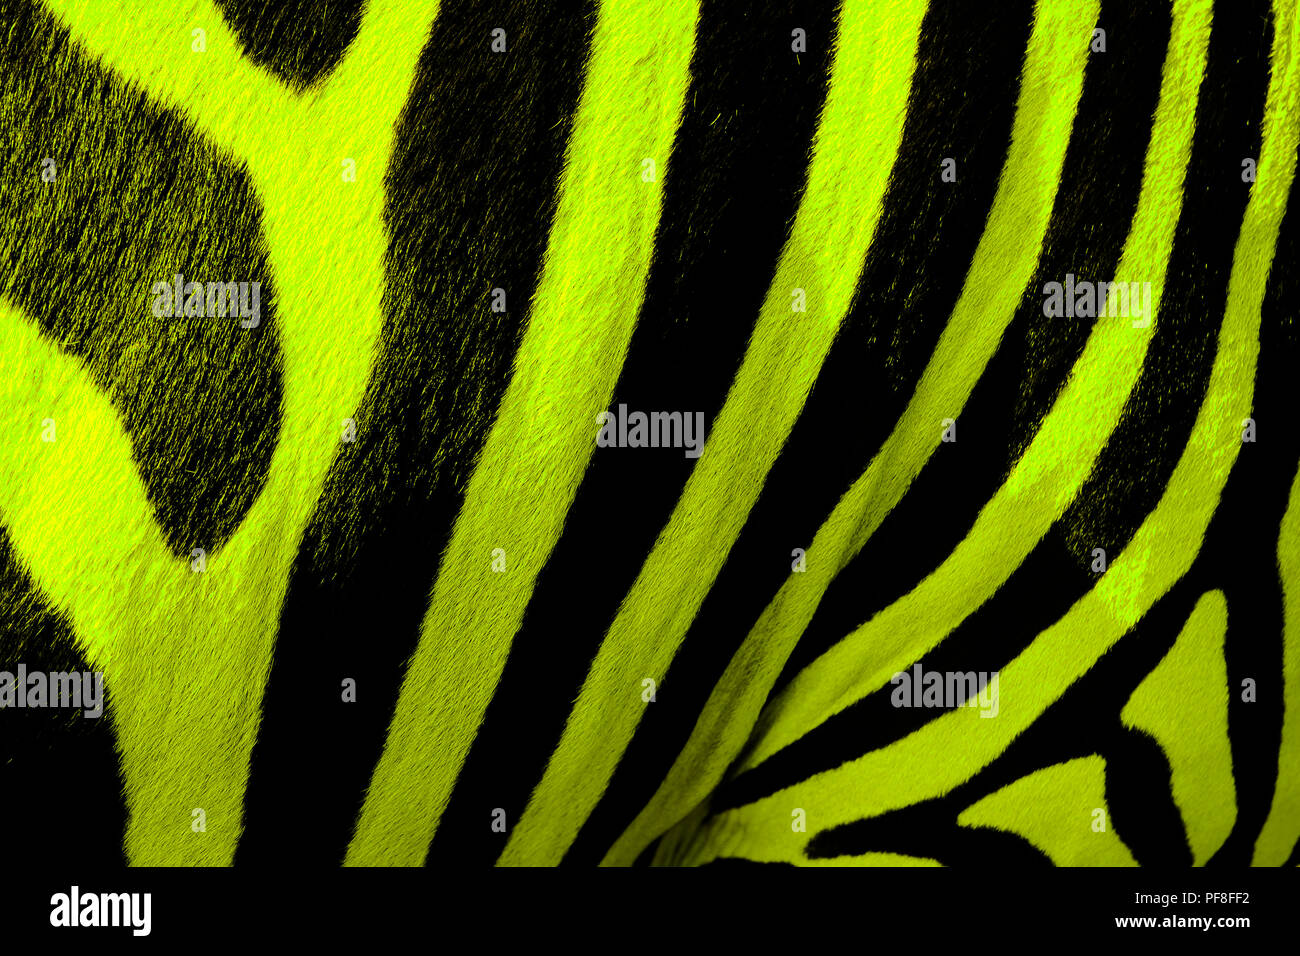 Digital verbesserte Bild einer Nahaufnahme von bunten Zebras lackiert Stockfoto